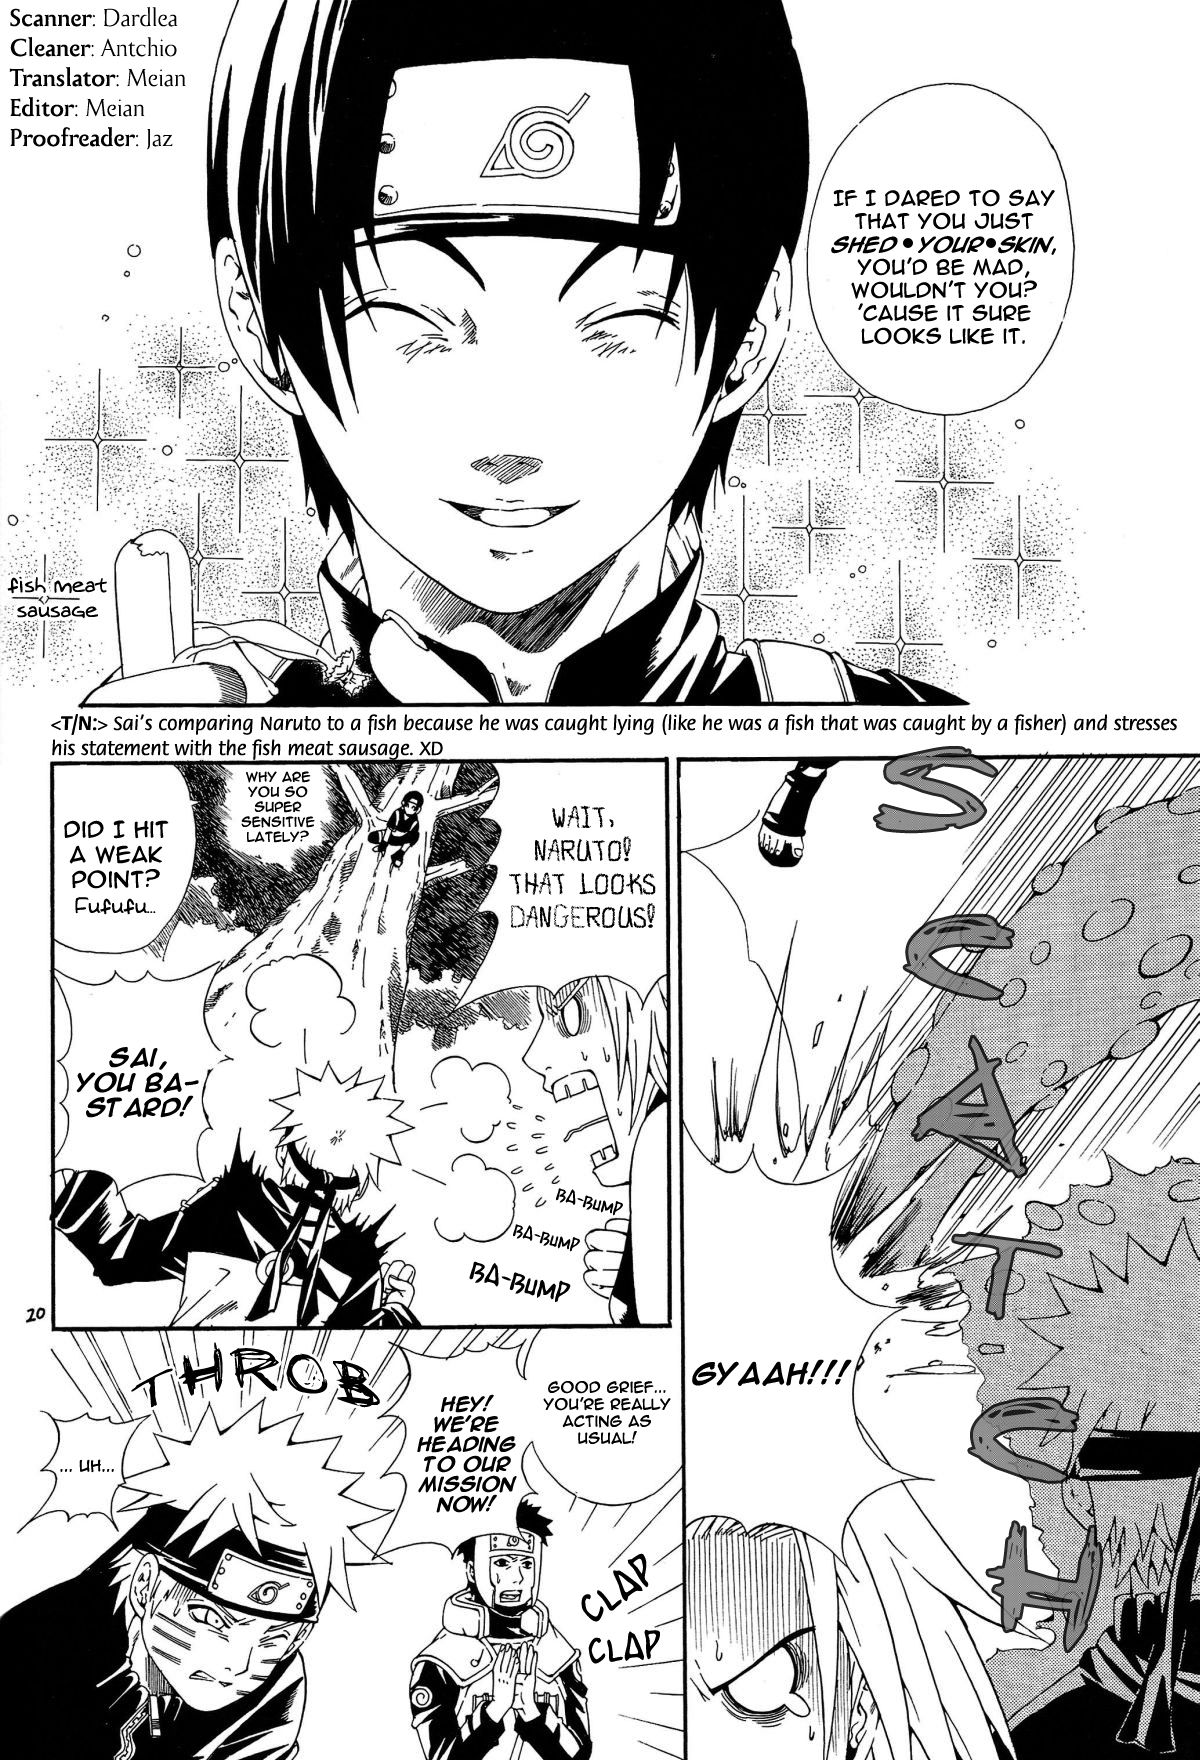 ERO ERO ERO (NARUTO) [Sasuke X Naruto] YAOI -ENG- page 18 full